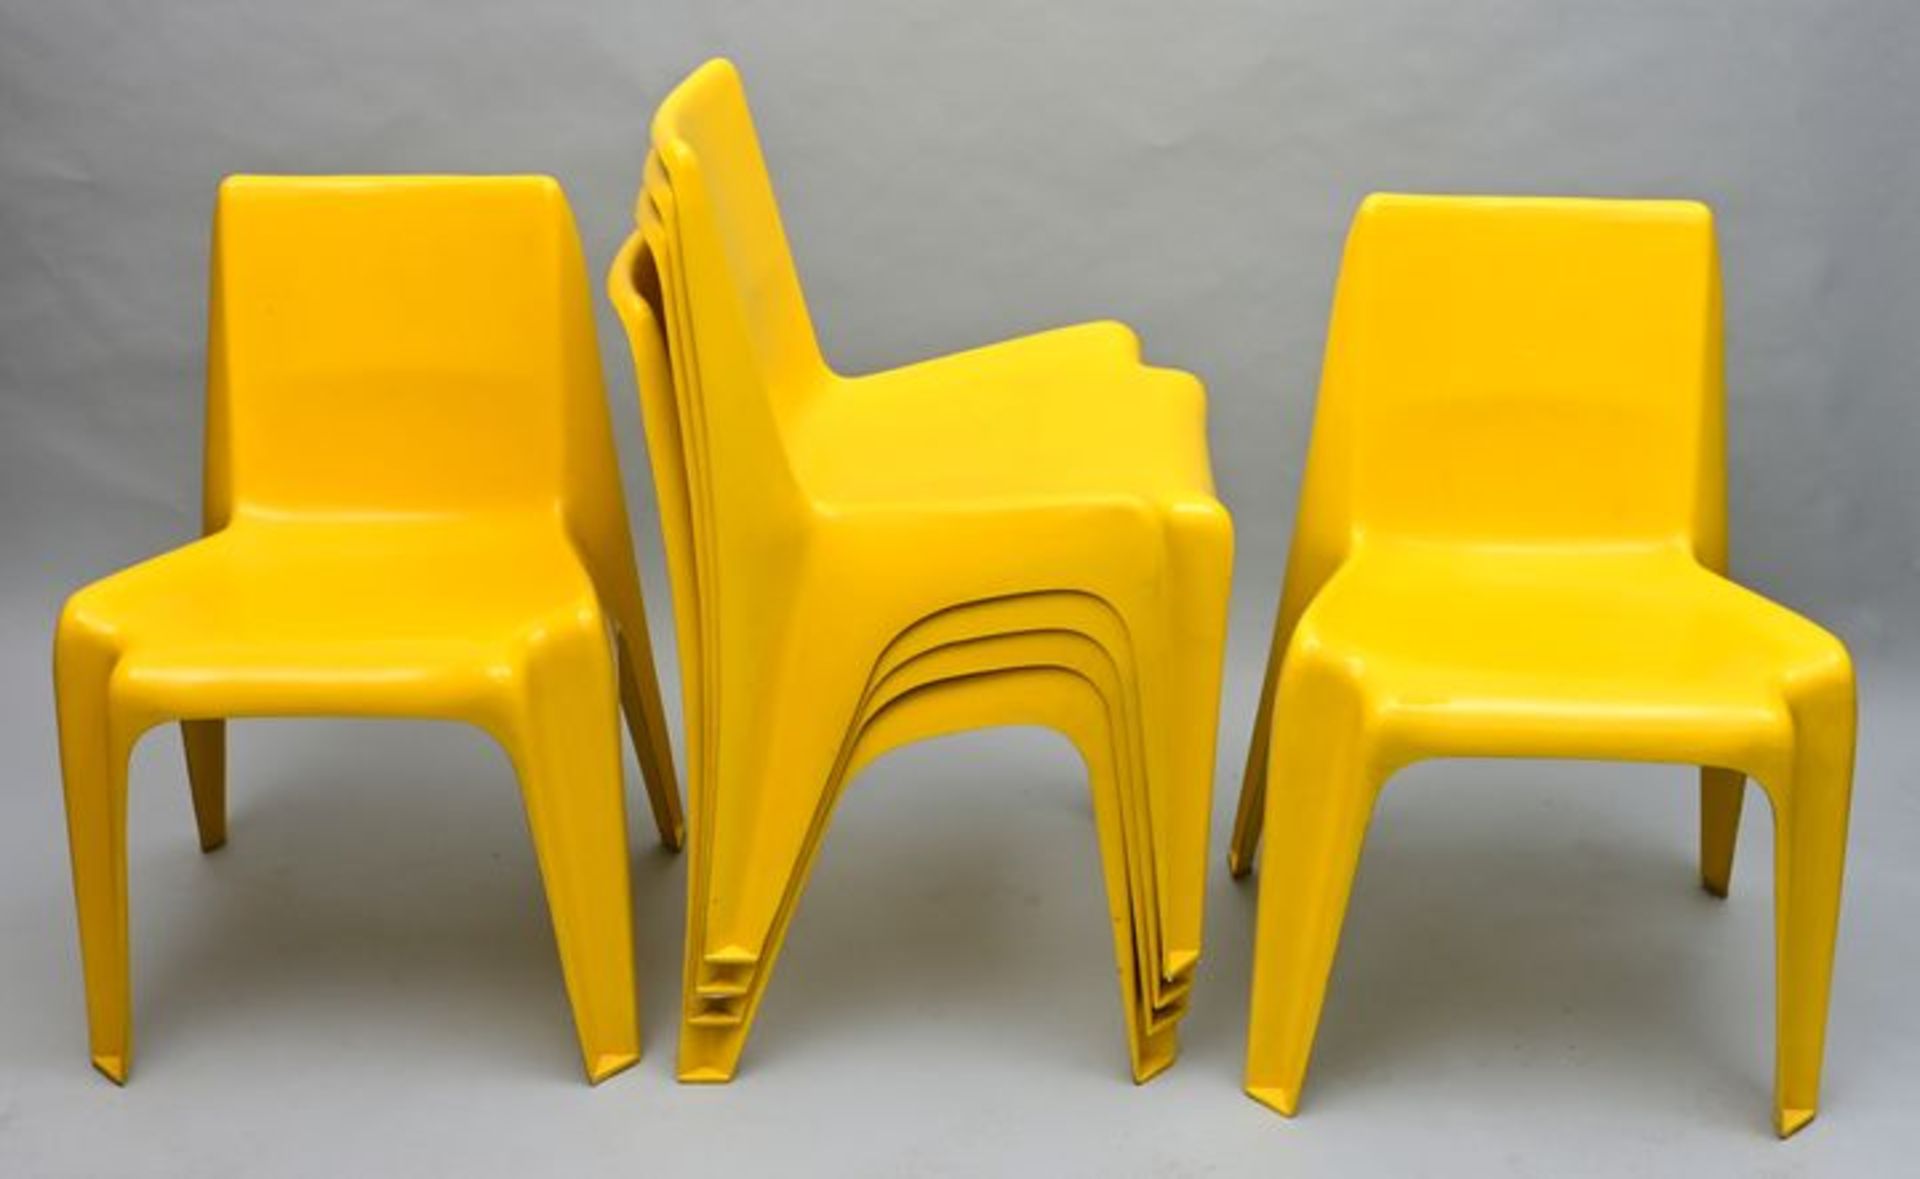 Designer-Stühle / Design chairs